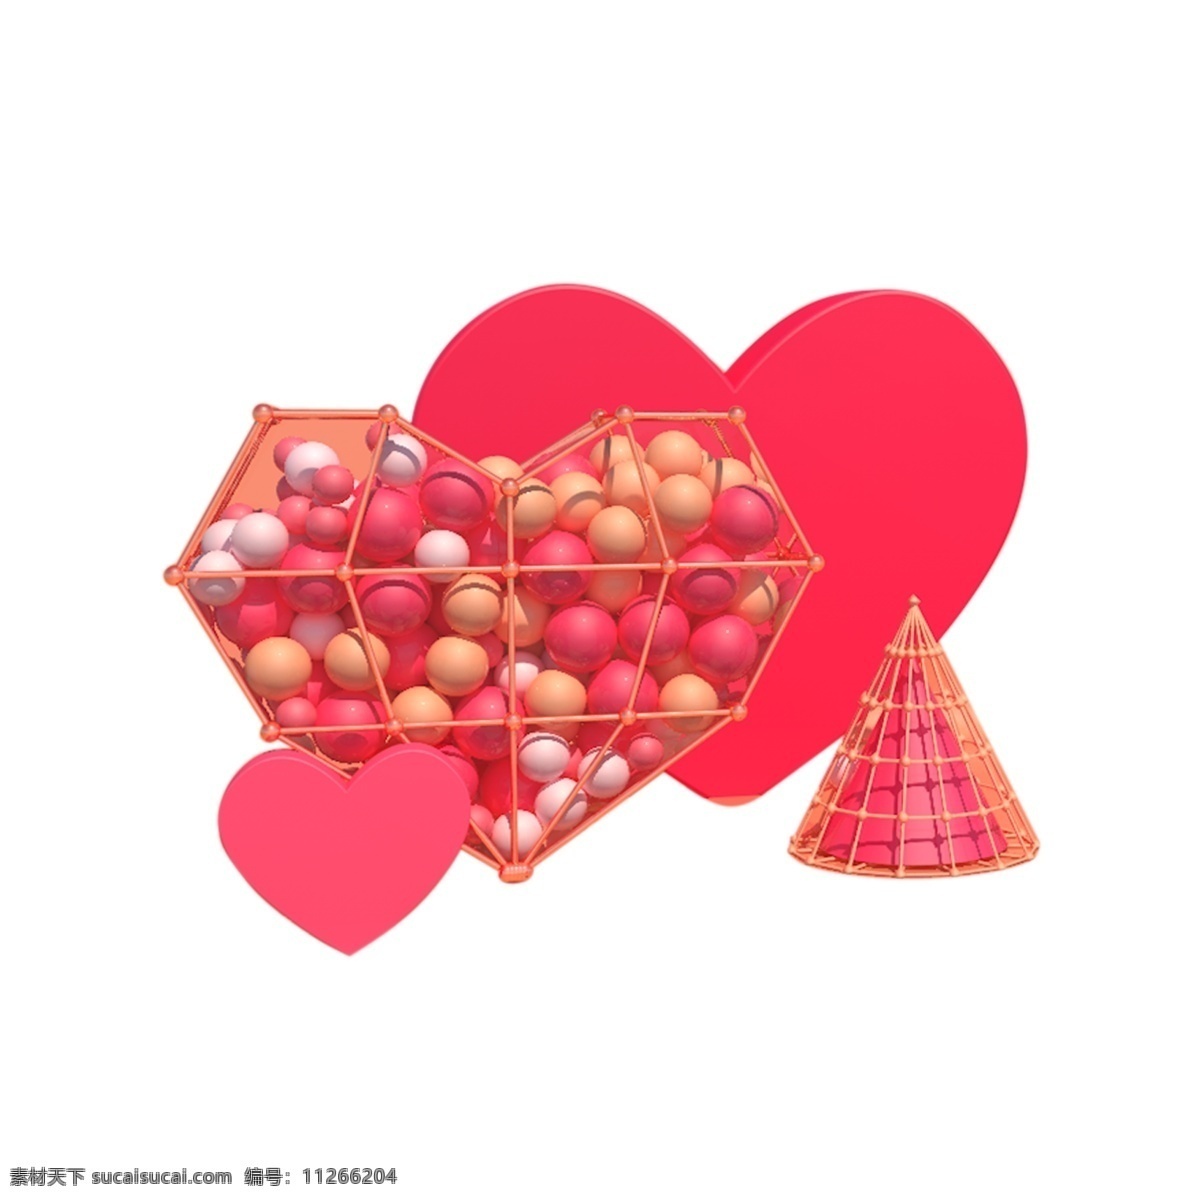 彩色 创意 心形 爱情 元素 表白 圆球 纹理 电商 活动 卡通 插画 情人节 节日 爱心 编织